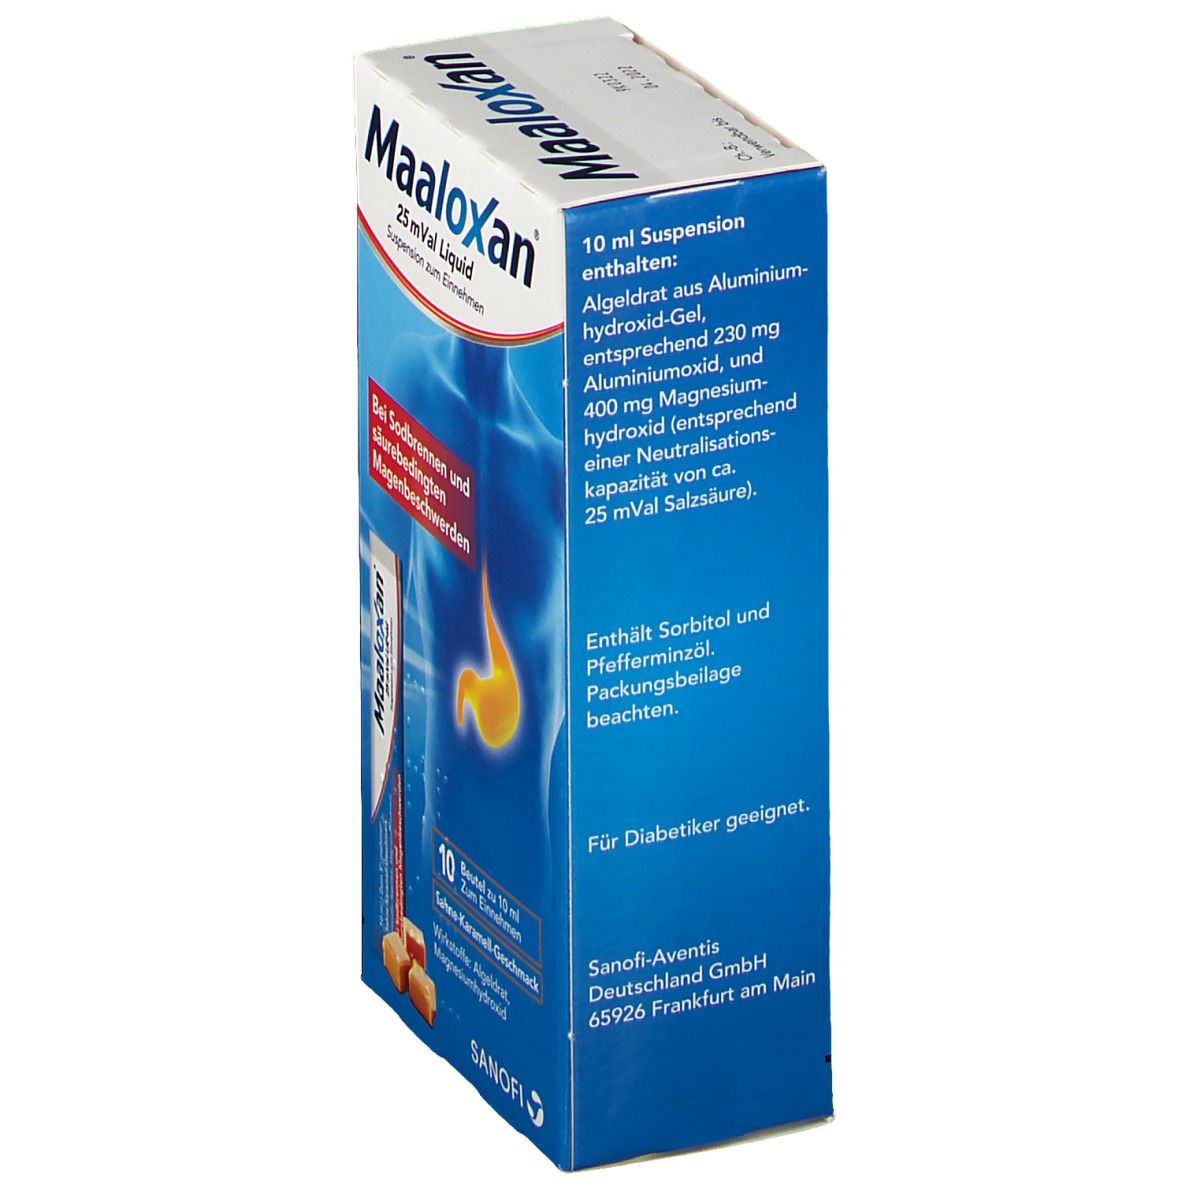 Maaloxan® 25 mVal Liquid Sahne-Karamell-Geschmack